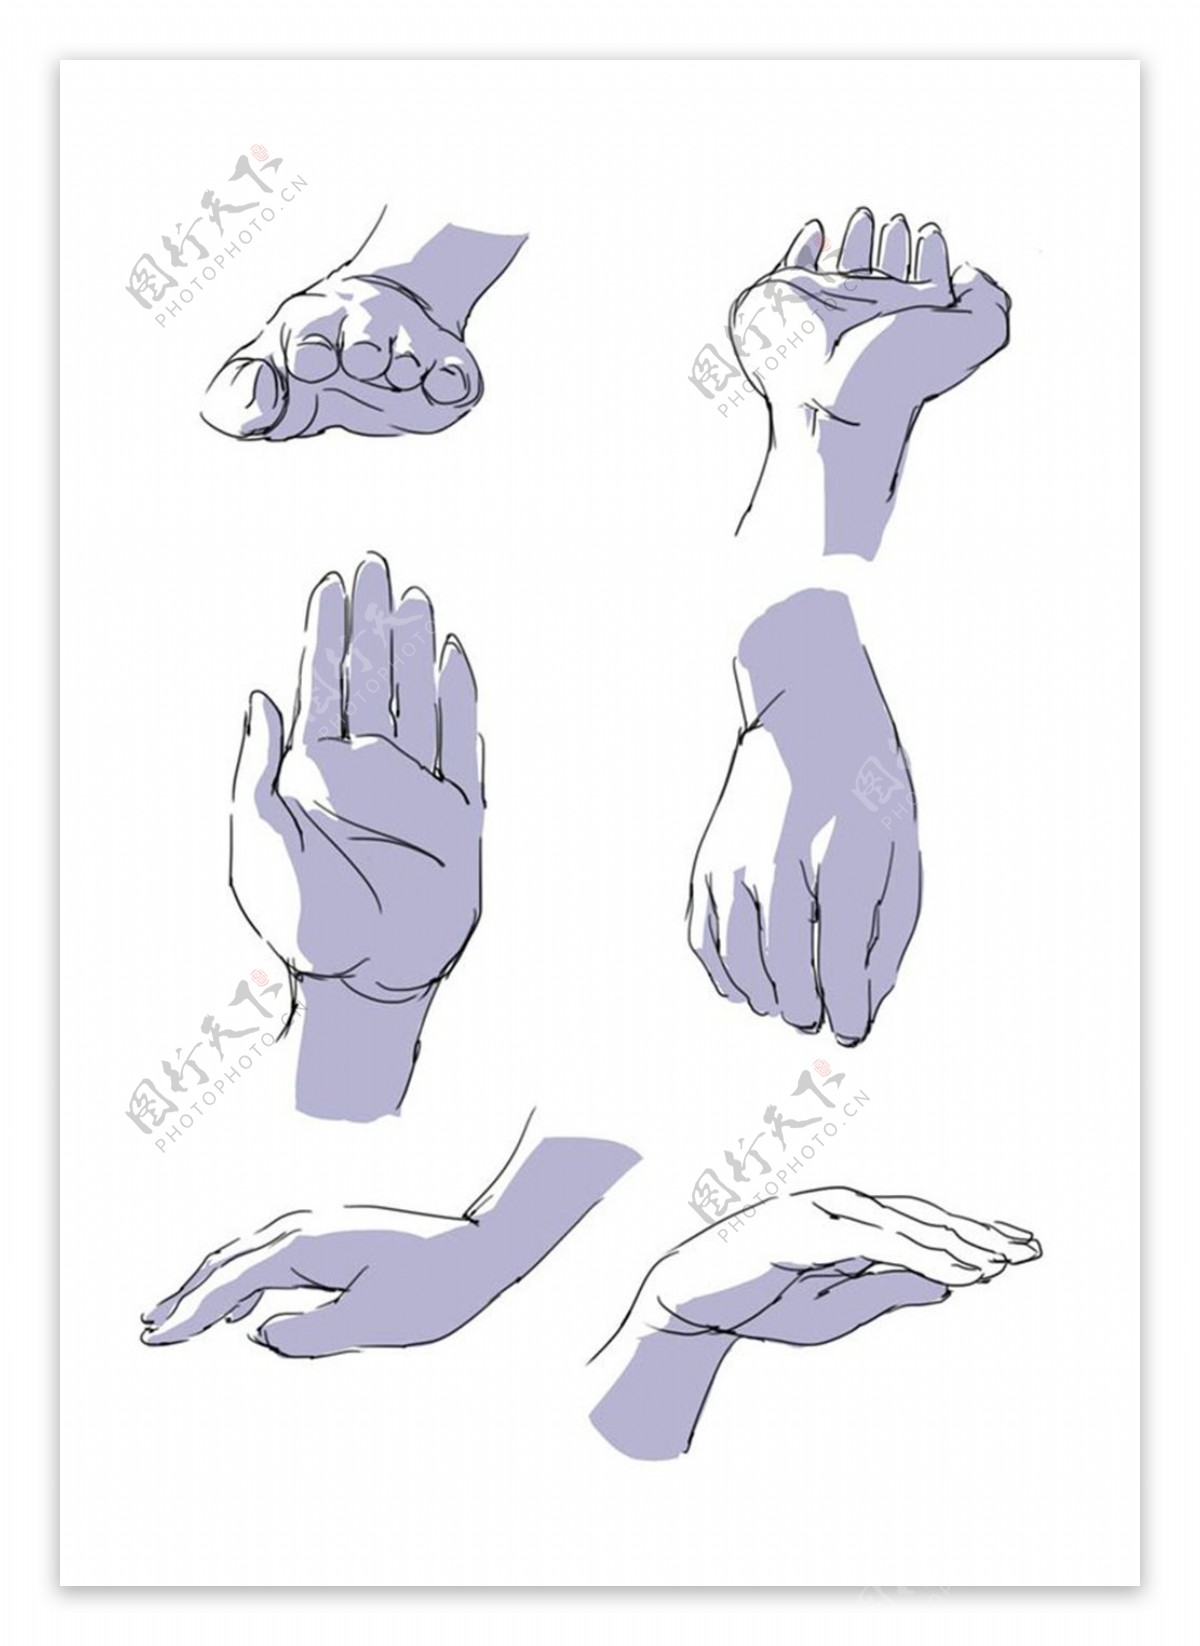 人体手型动态分析